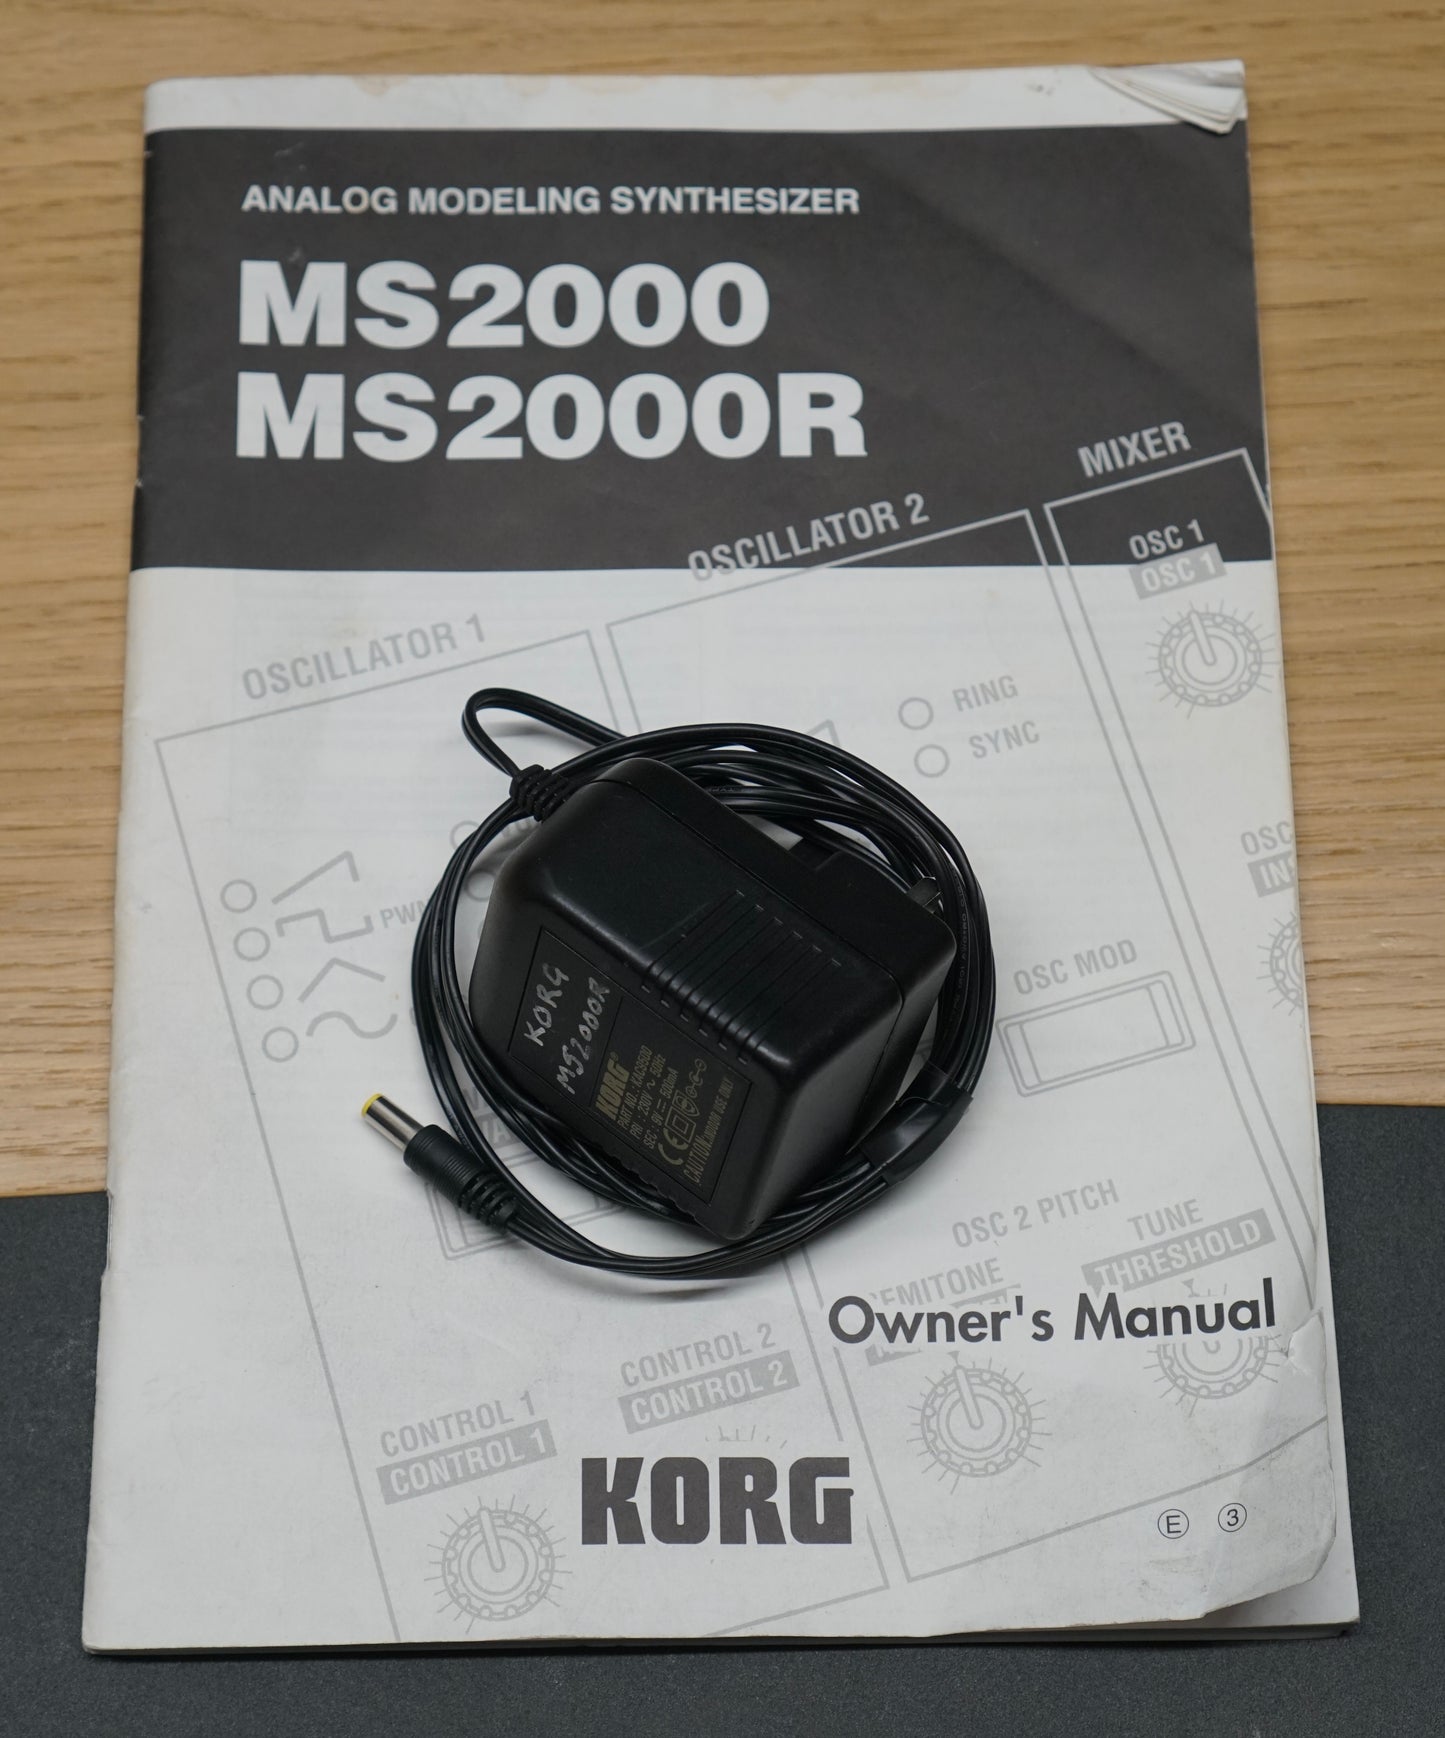 Korg MS2000R Analog Modeling Synthesiser